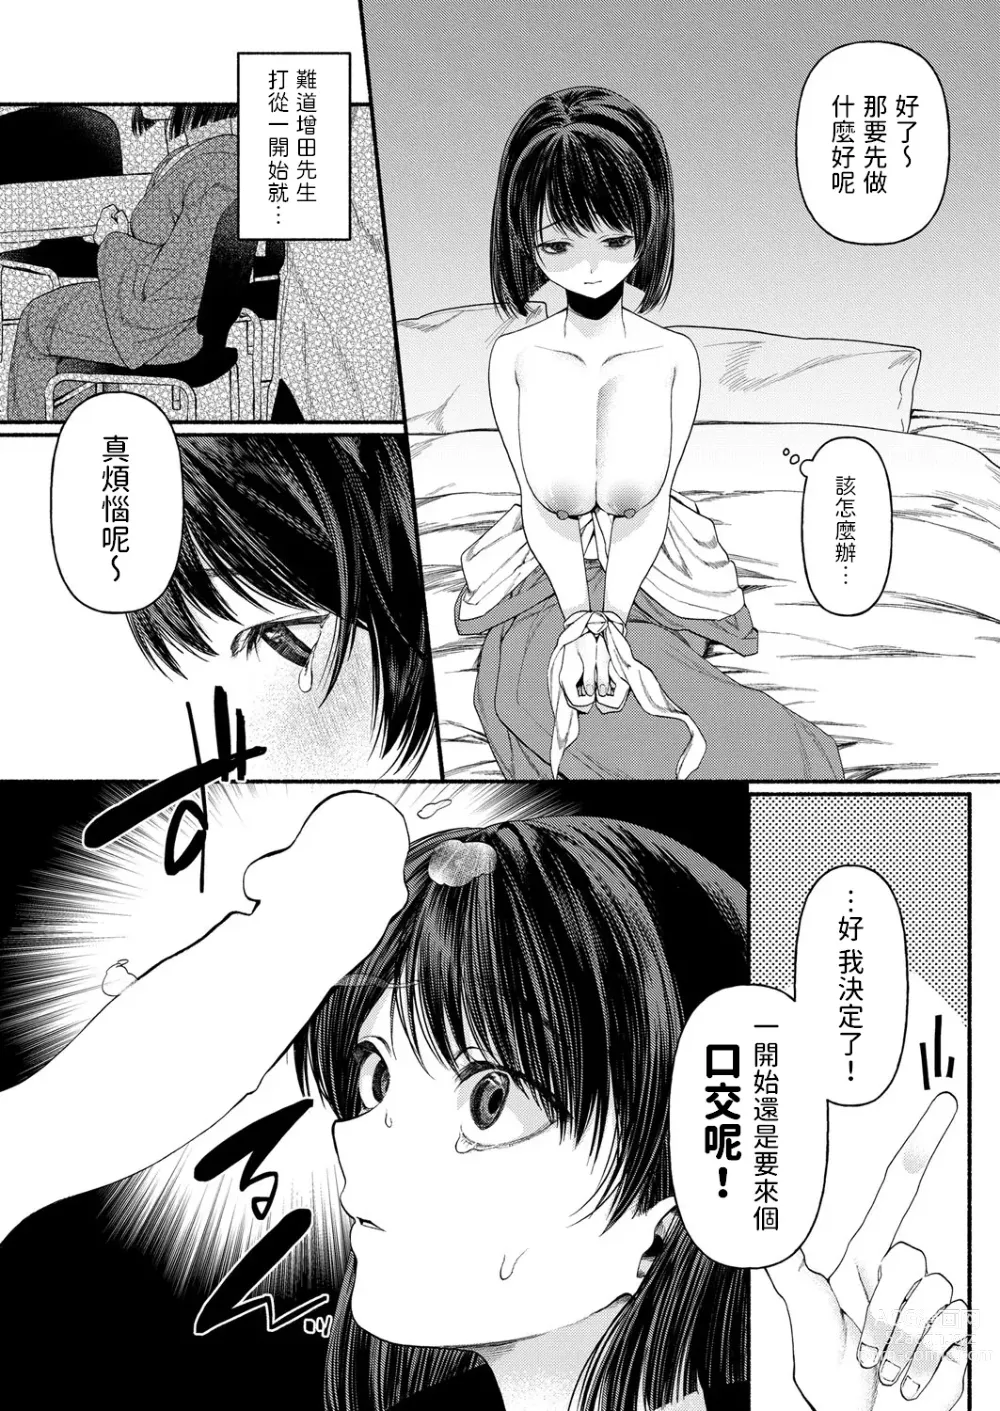 Page 16 of manga Hakoiri Musume wa Pet ni Ochiru -Zenpen-